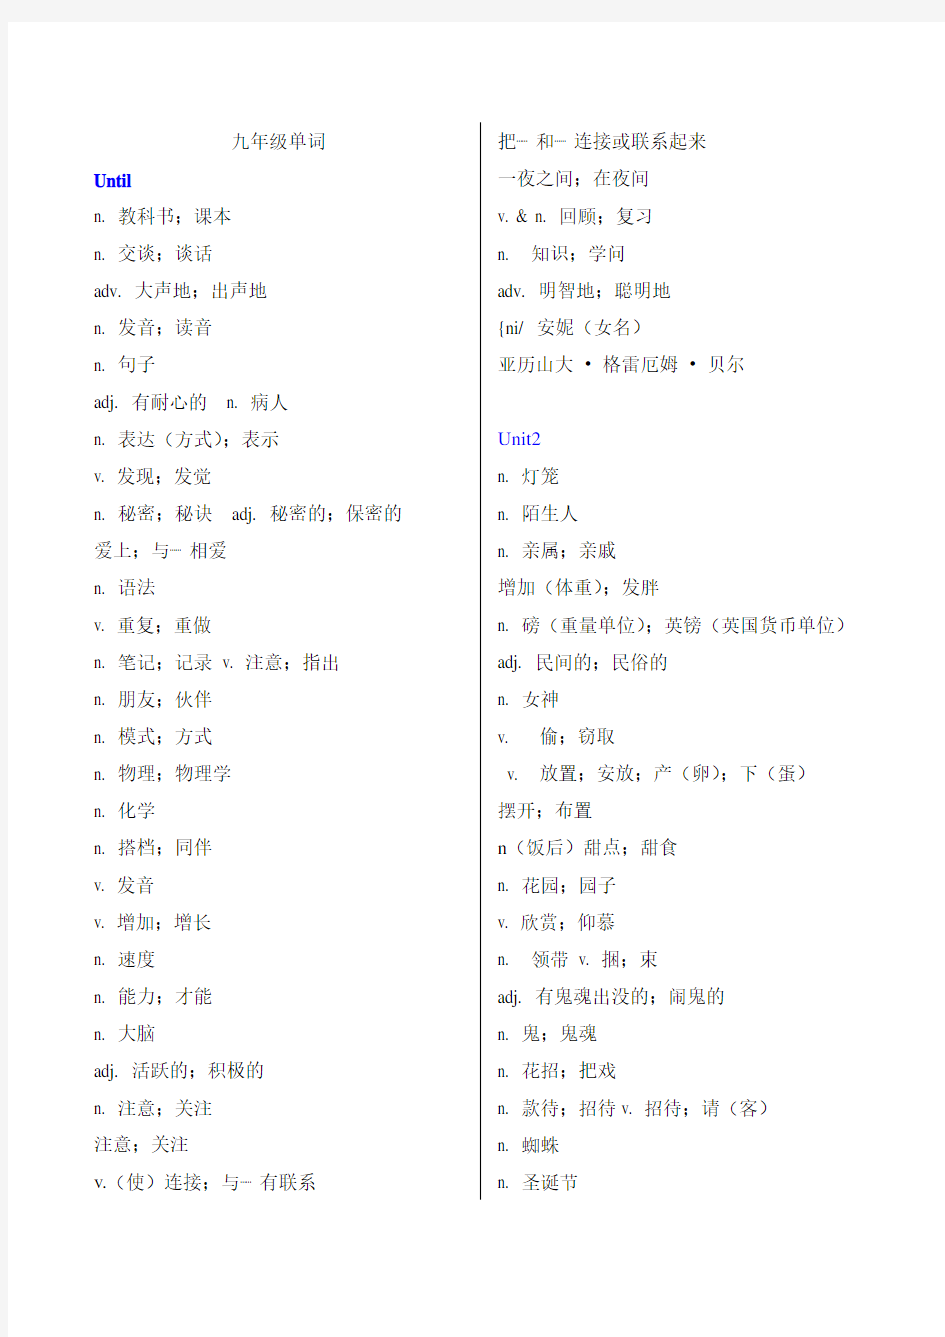 新版九年级1-14单元英语单词表(中文)